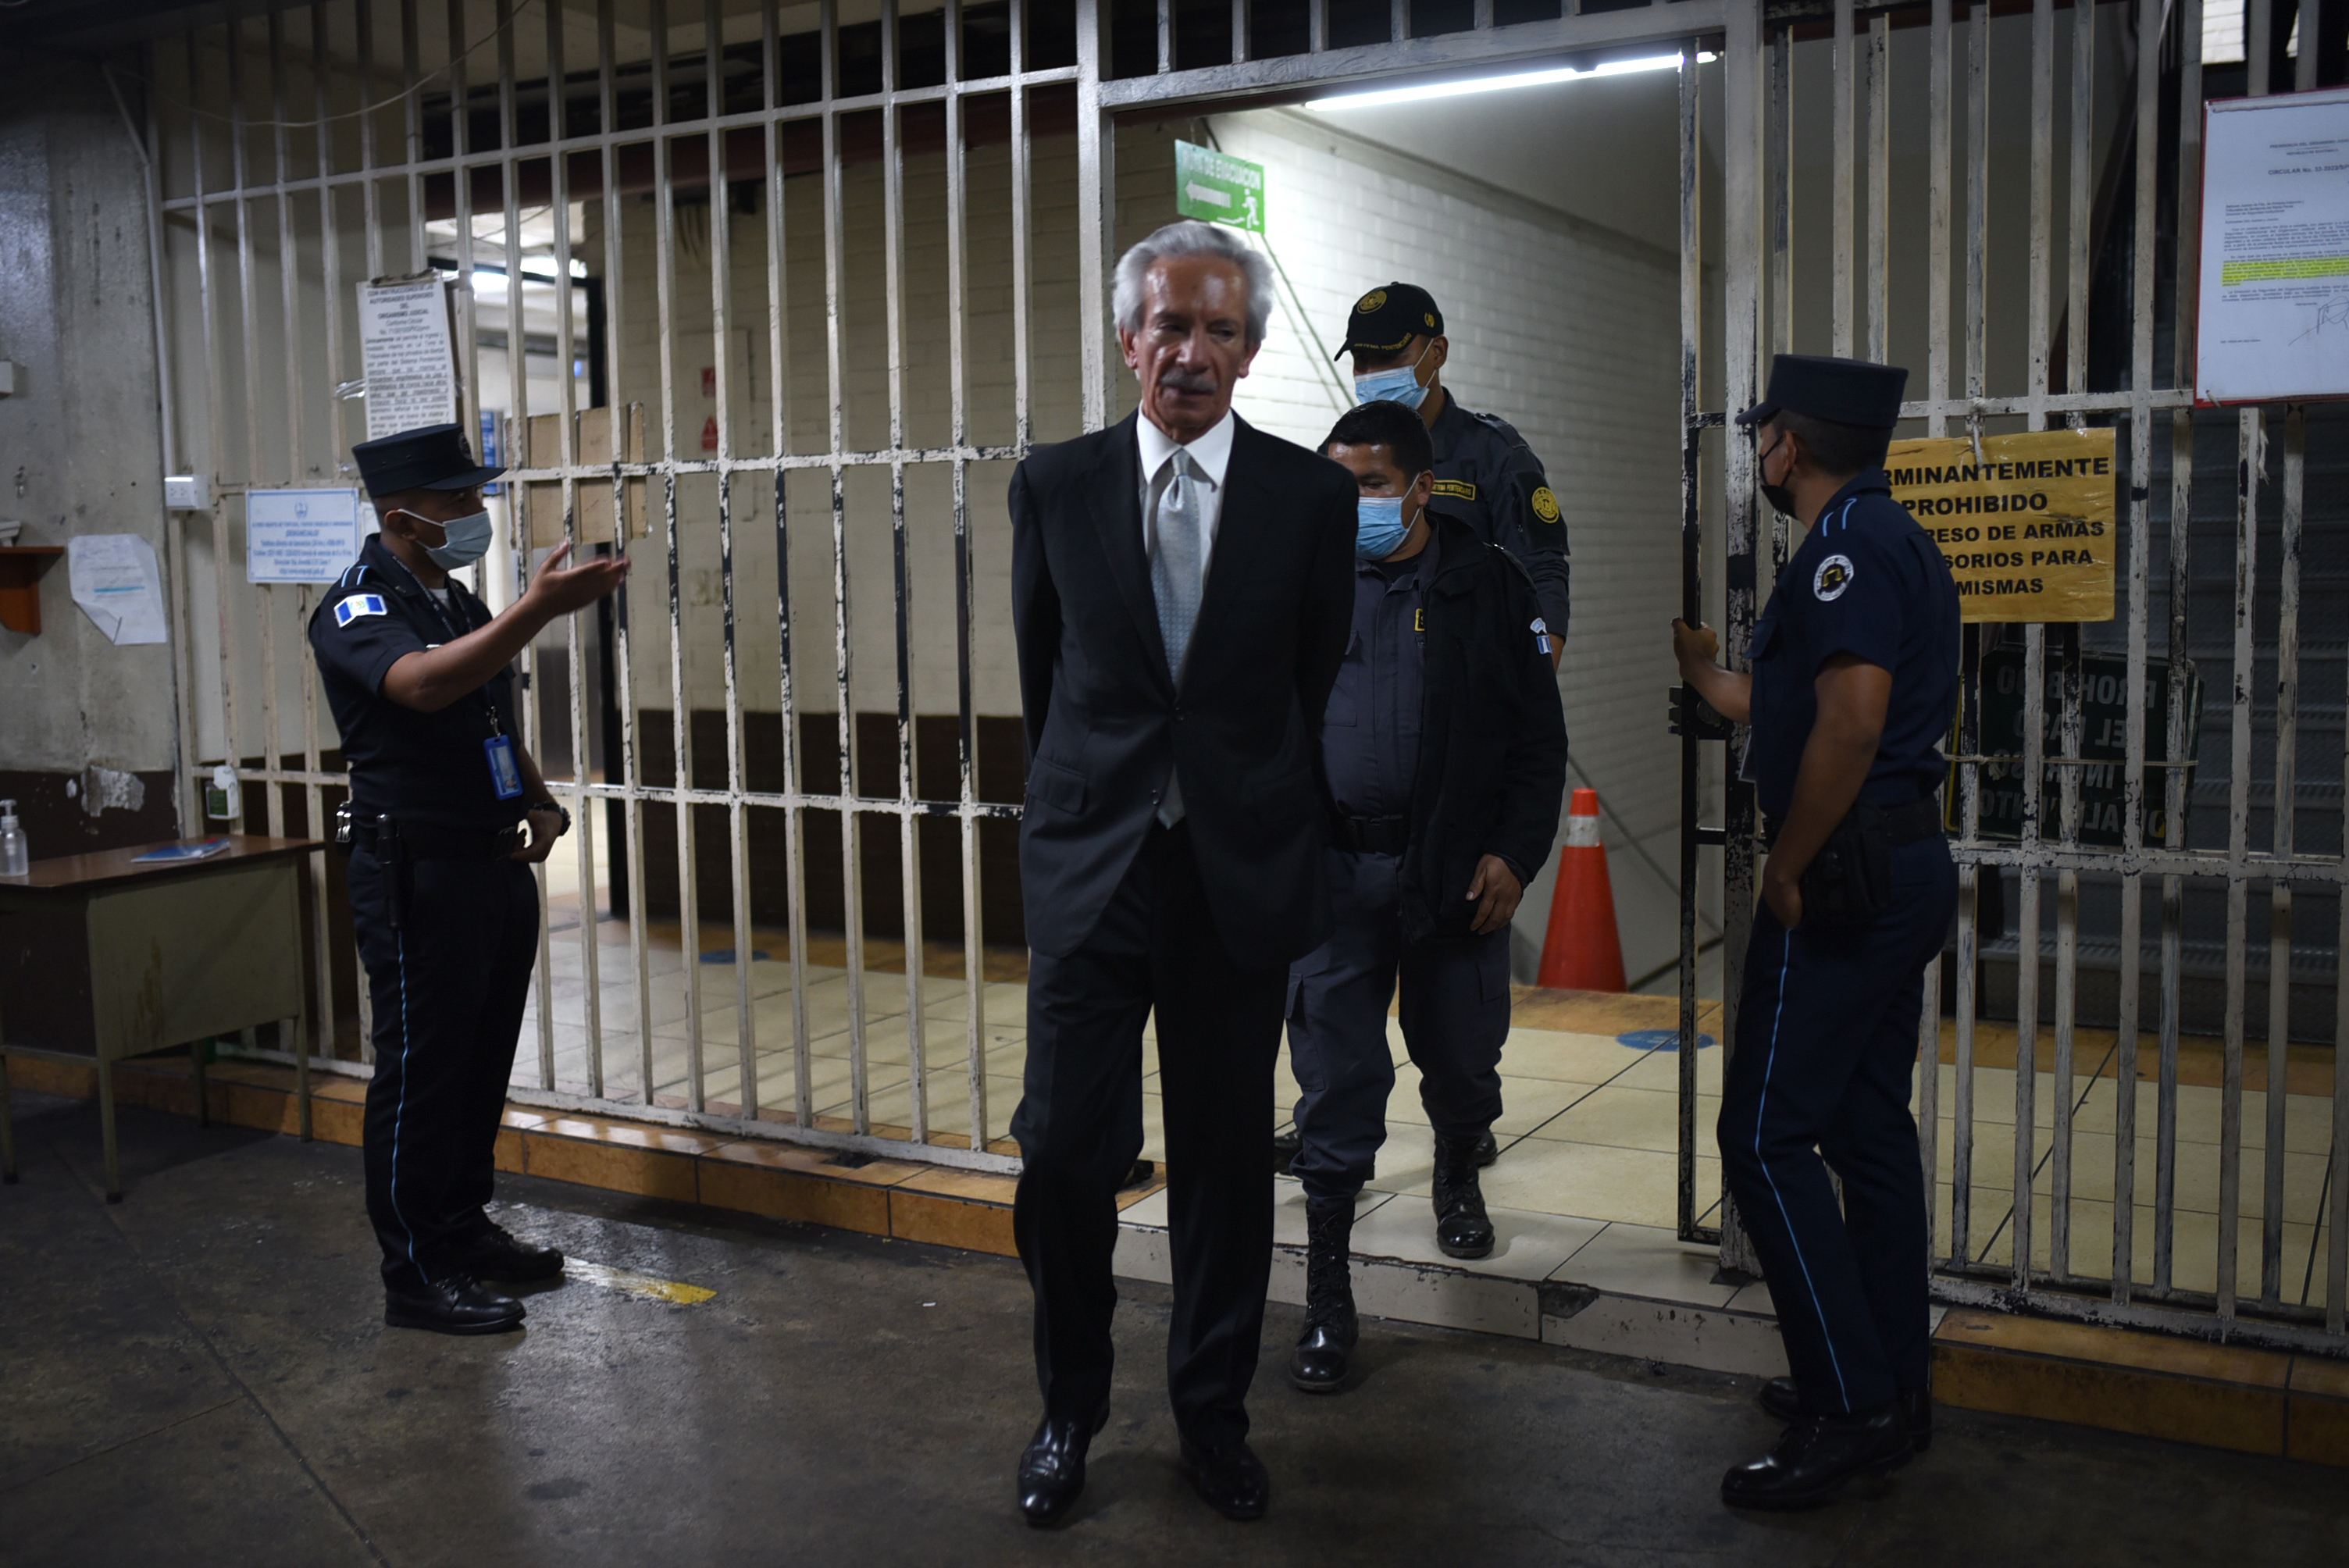 Un juez envía a juicio al presidente de ‘El Periódico’, José Rubén Zamora, acusado de lavado de dinero y chantaje